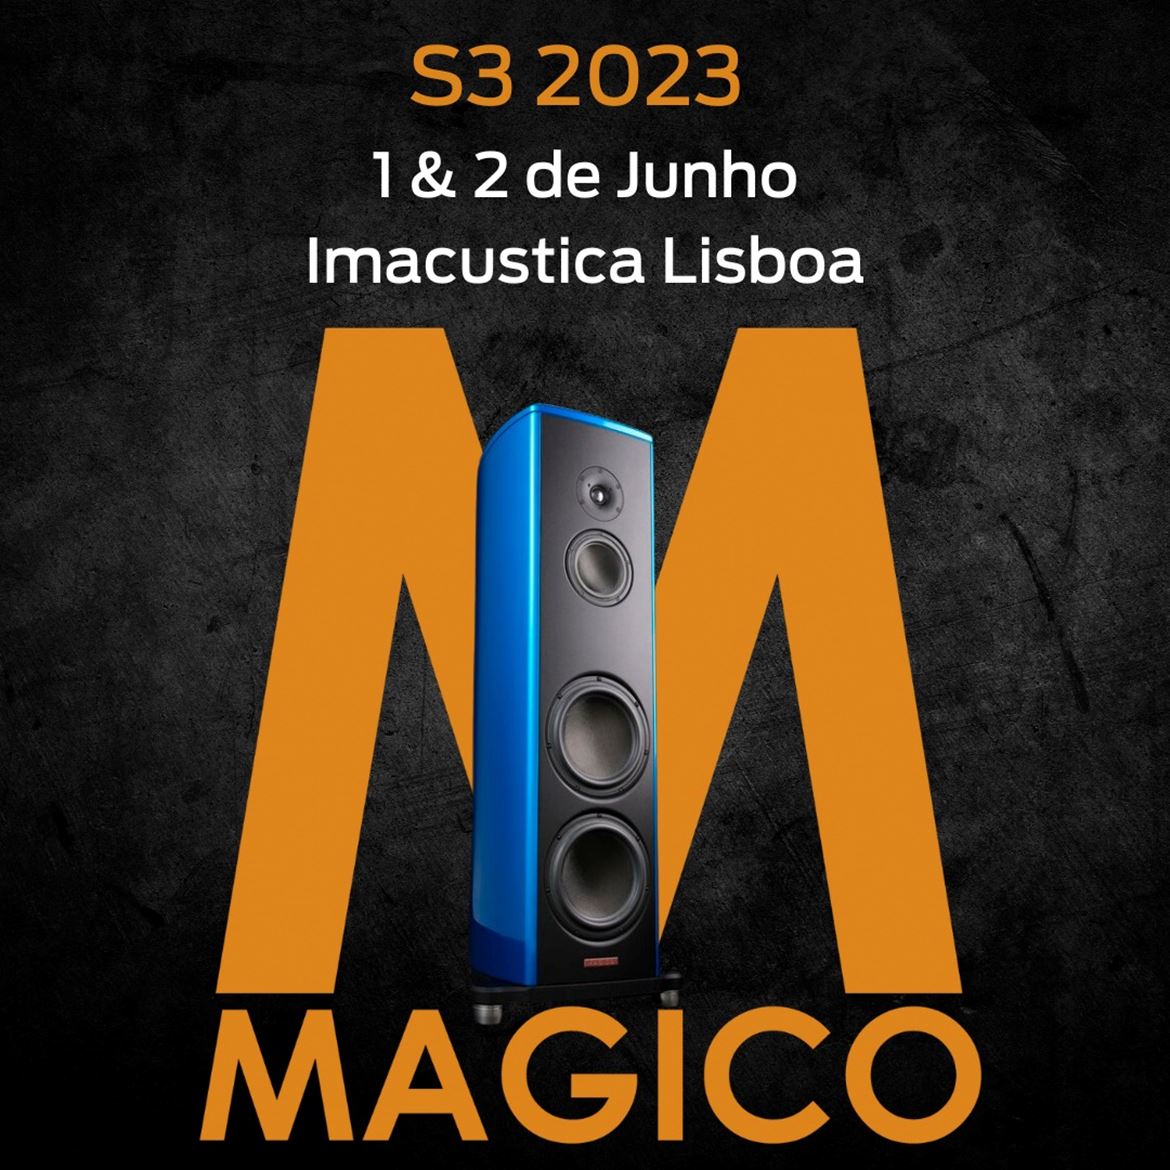 As Magico S3 vão ser apresentadas na Imacustica - Lisboa, brevemente.